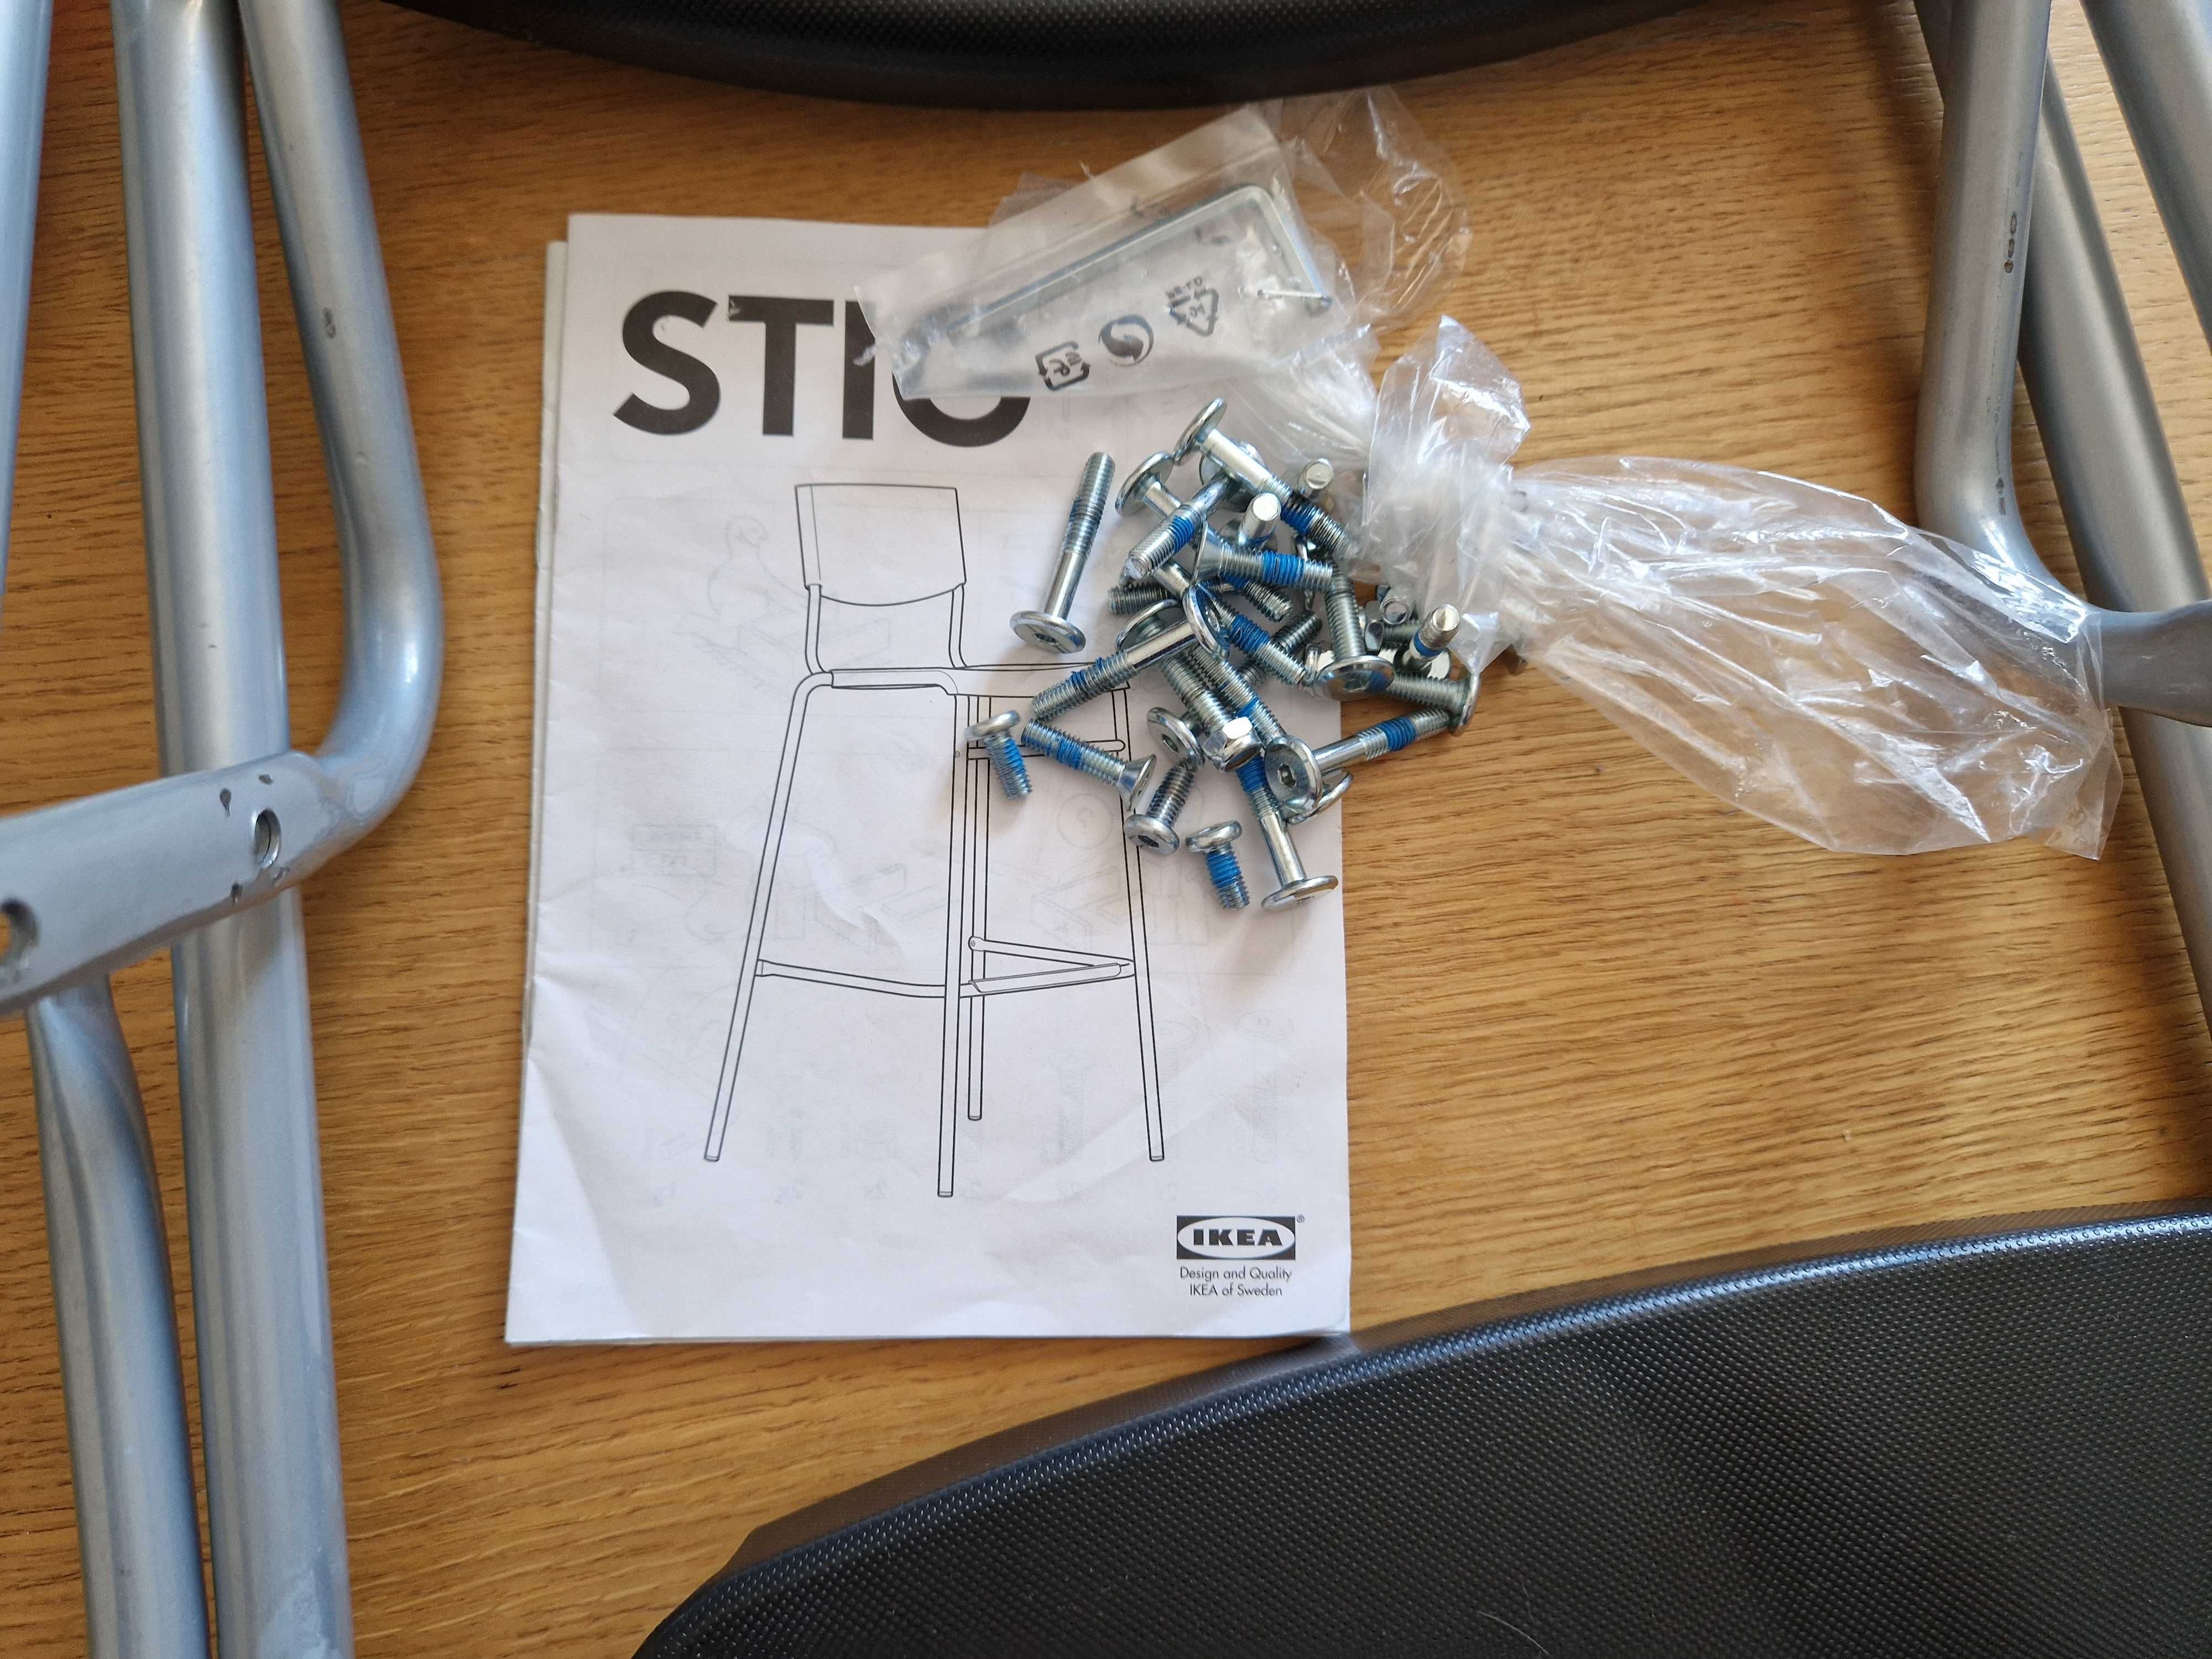 Stołki barowe/ hokery Ikea Stig /2 sztuki - cena za komplet